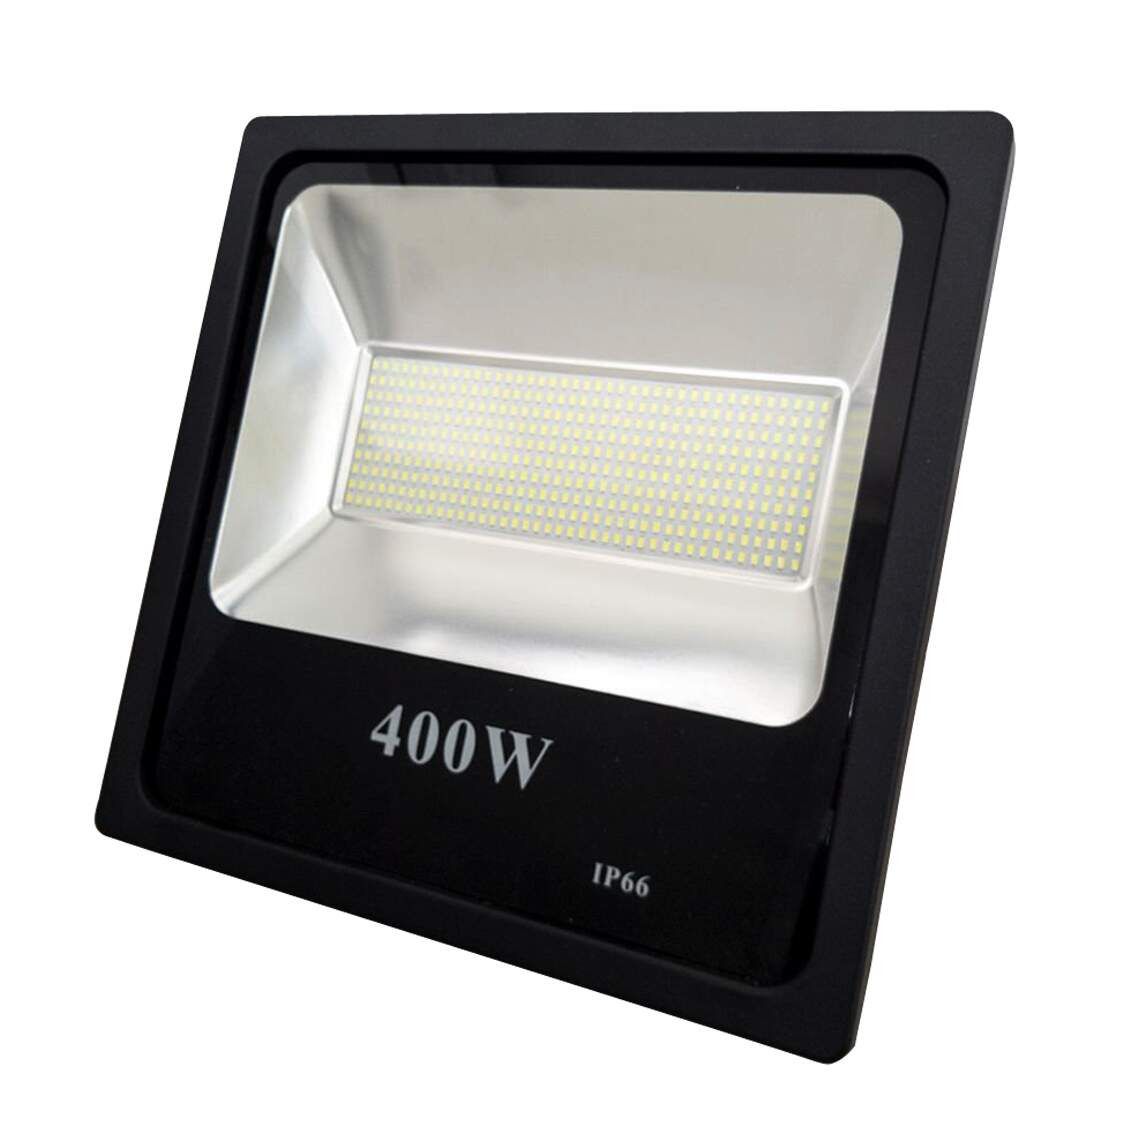 Refletor Holofote Led 400w Smd Ip66 A Prova D'água Branco Quente 3000k - Led  Mais Iluminação - Led e Acessórios